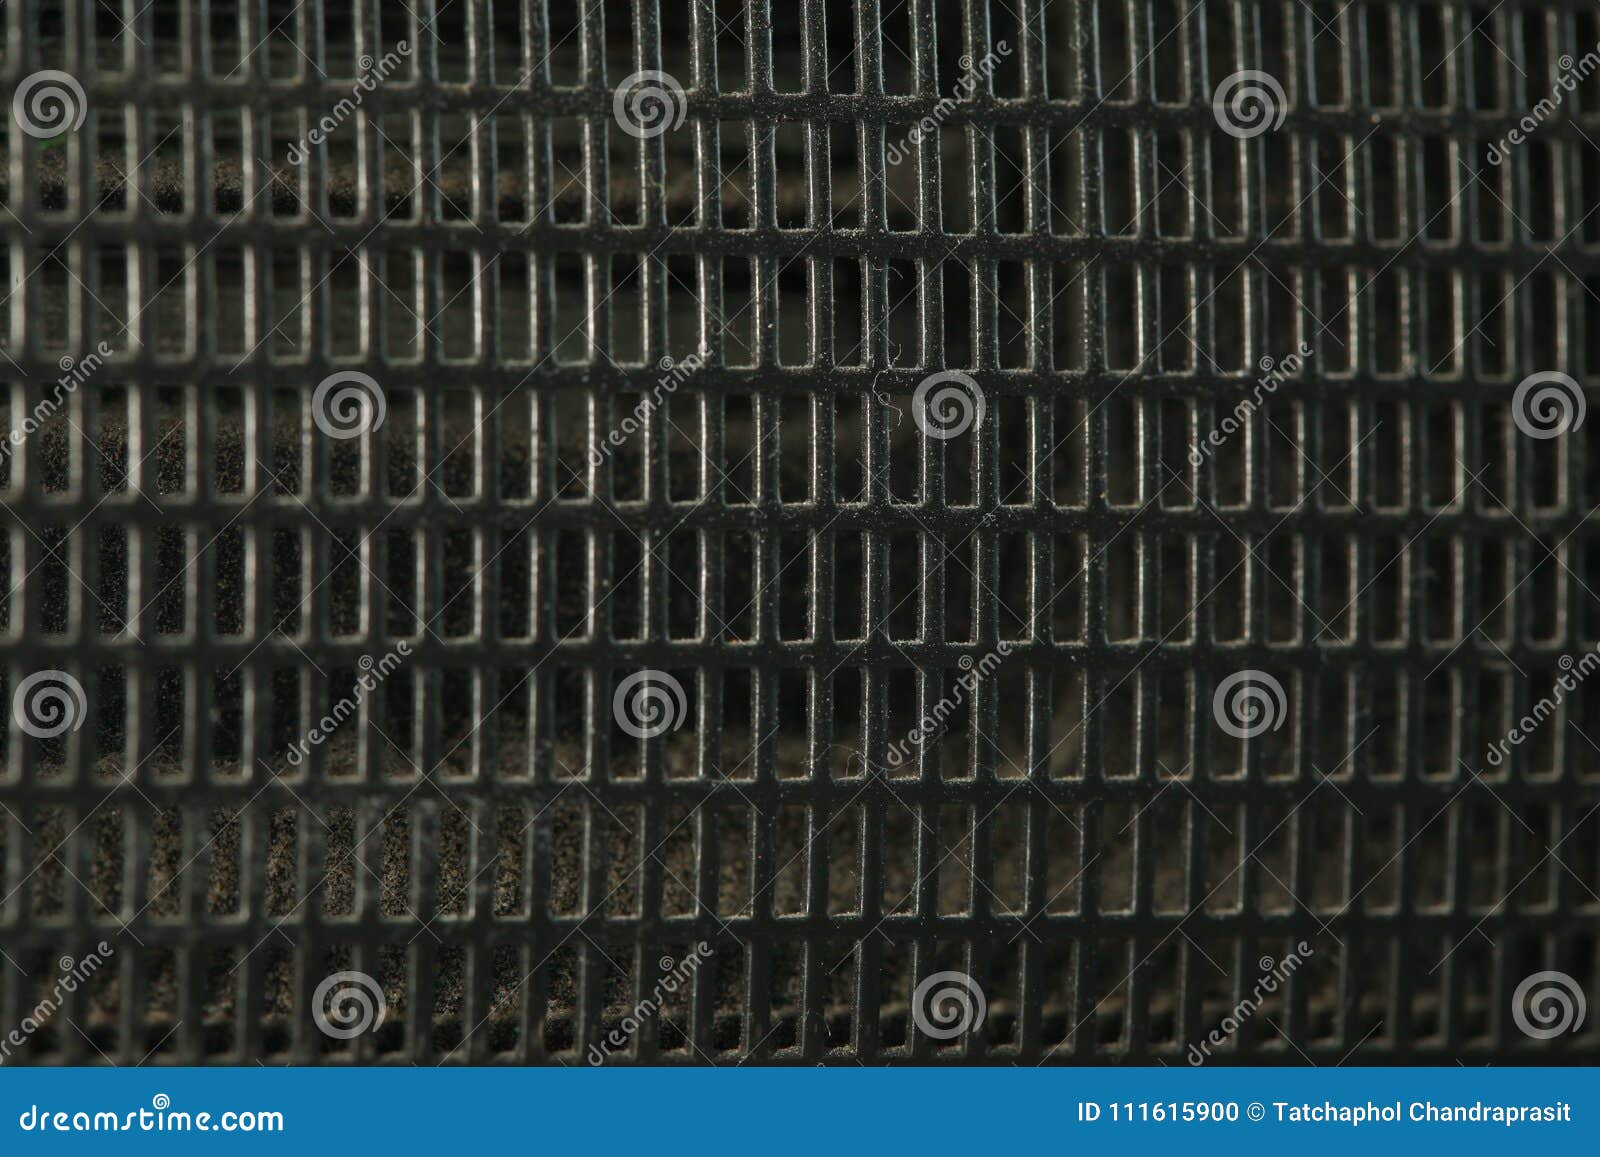 Speaker cover guard scene. stock photo. Image of media - 111615900